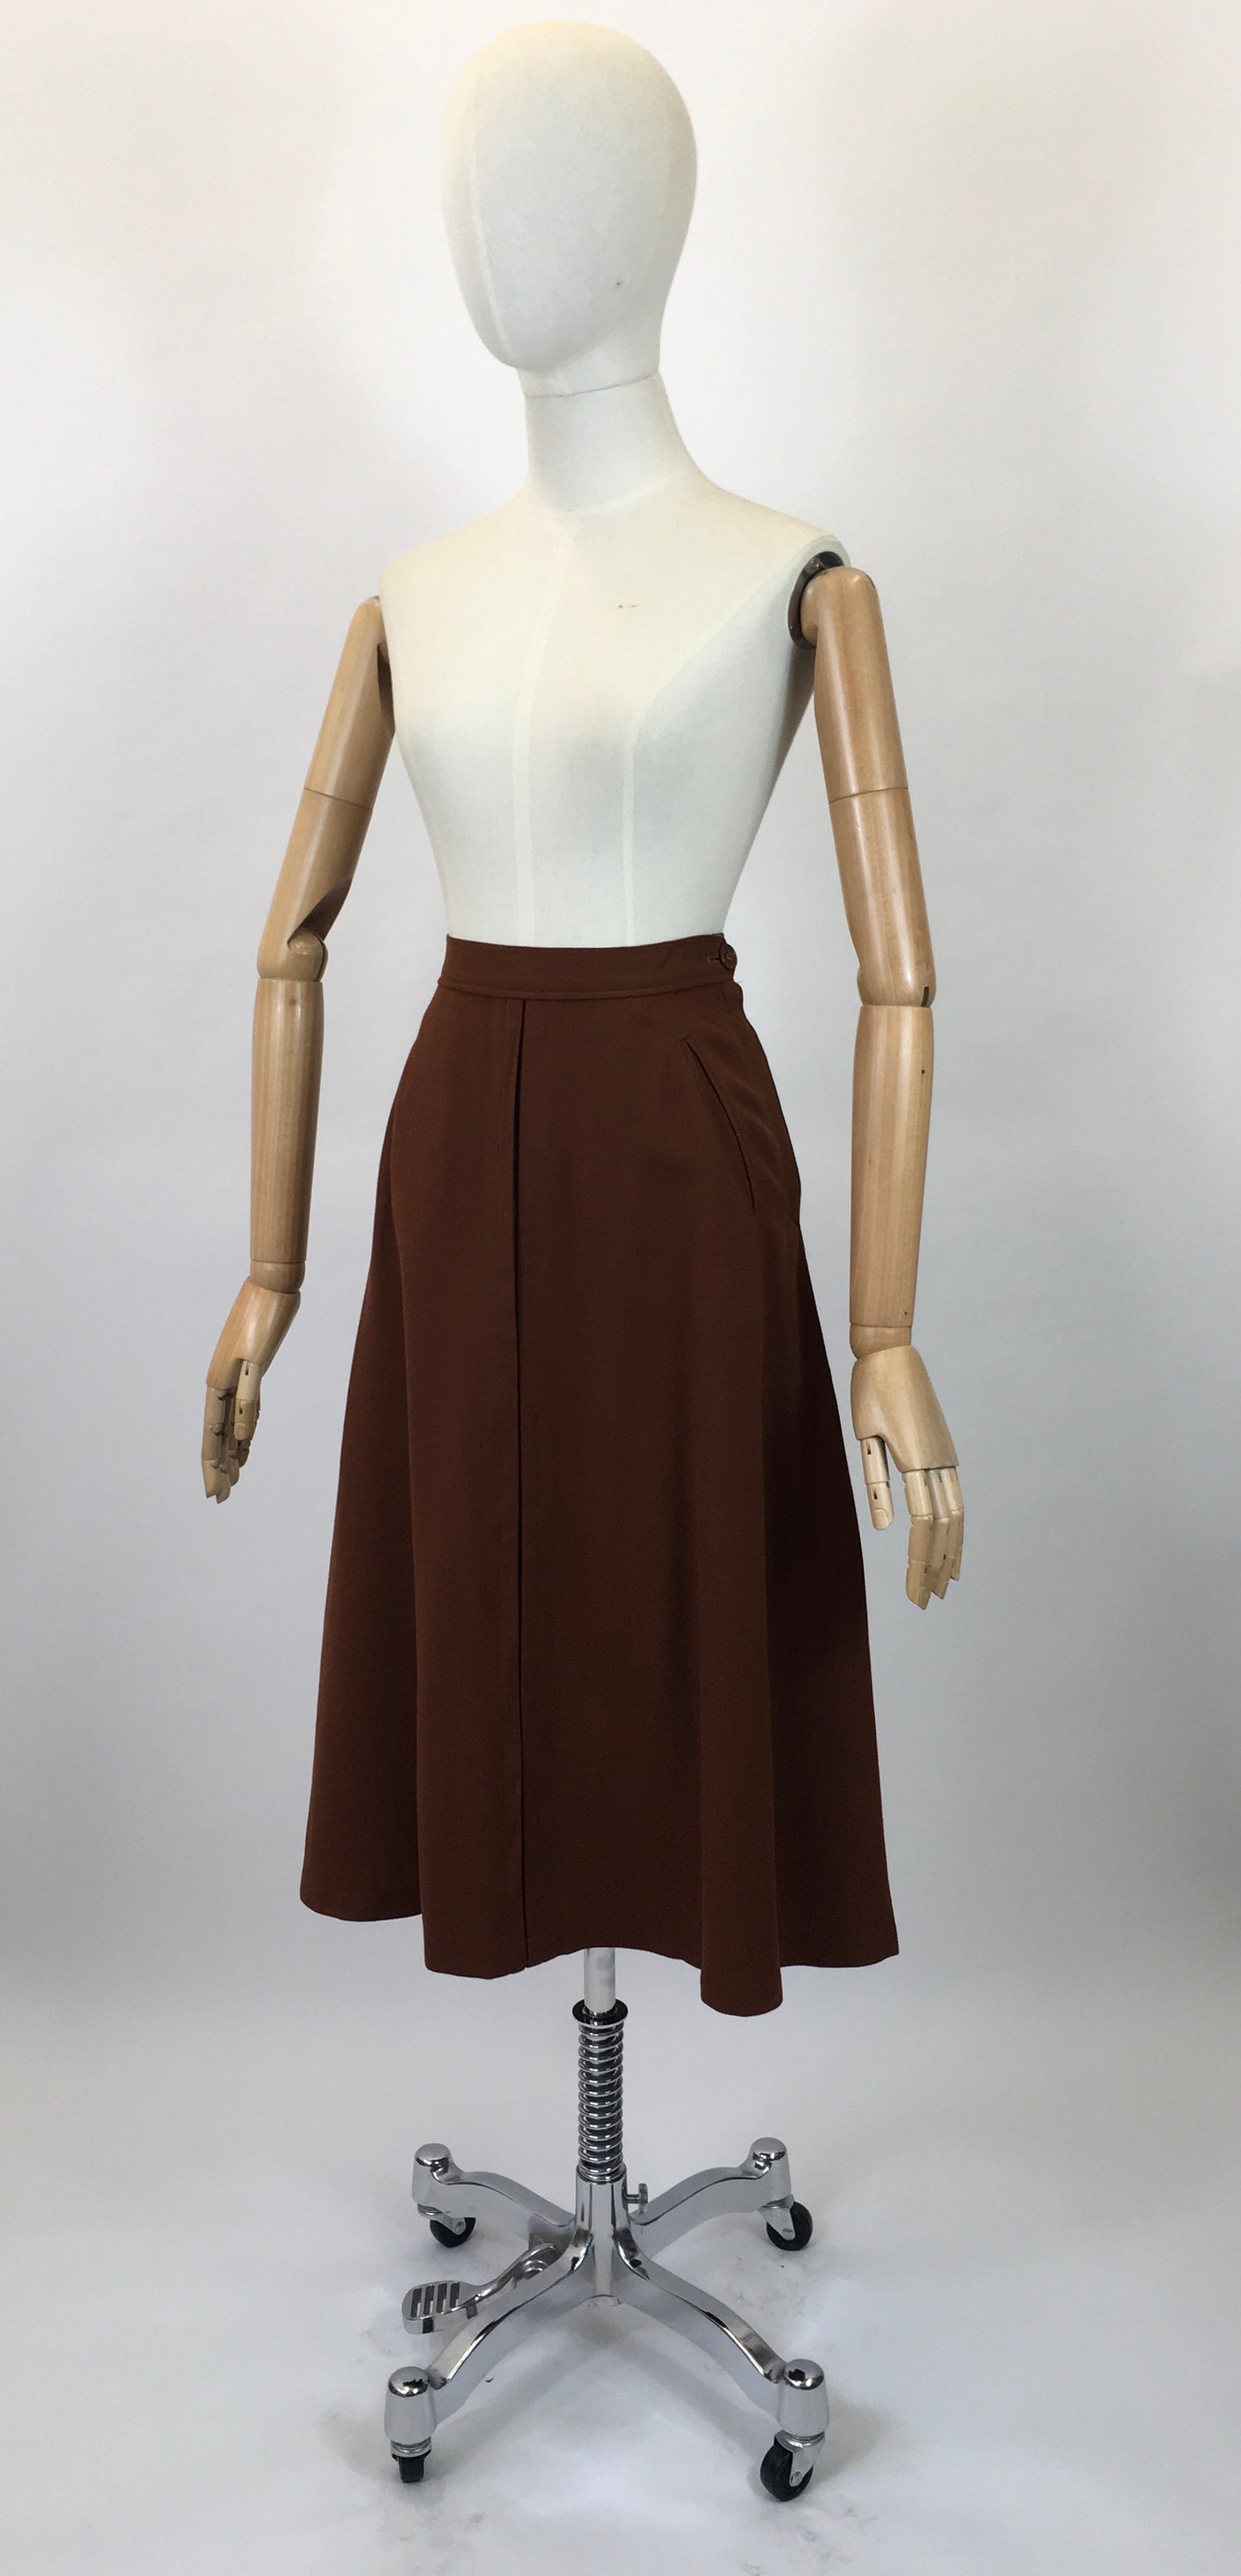 Original 40’s Woollen Skirt - in a warm Chestnut Brown